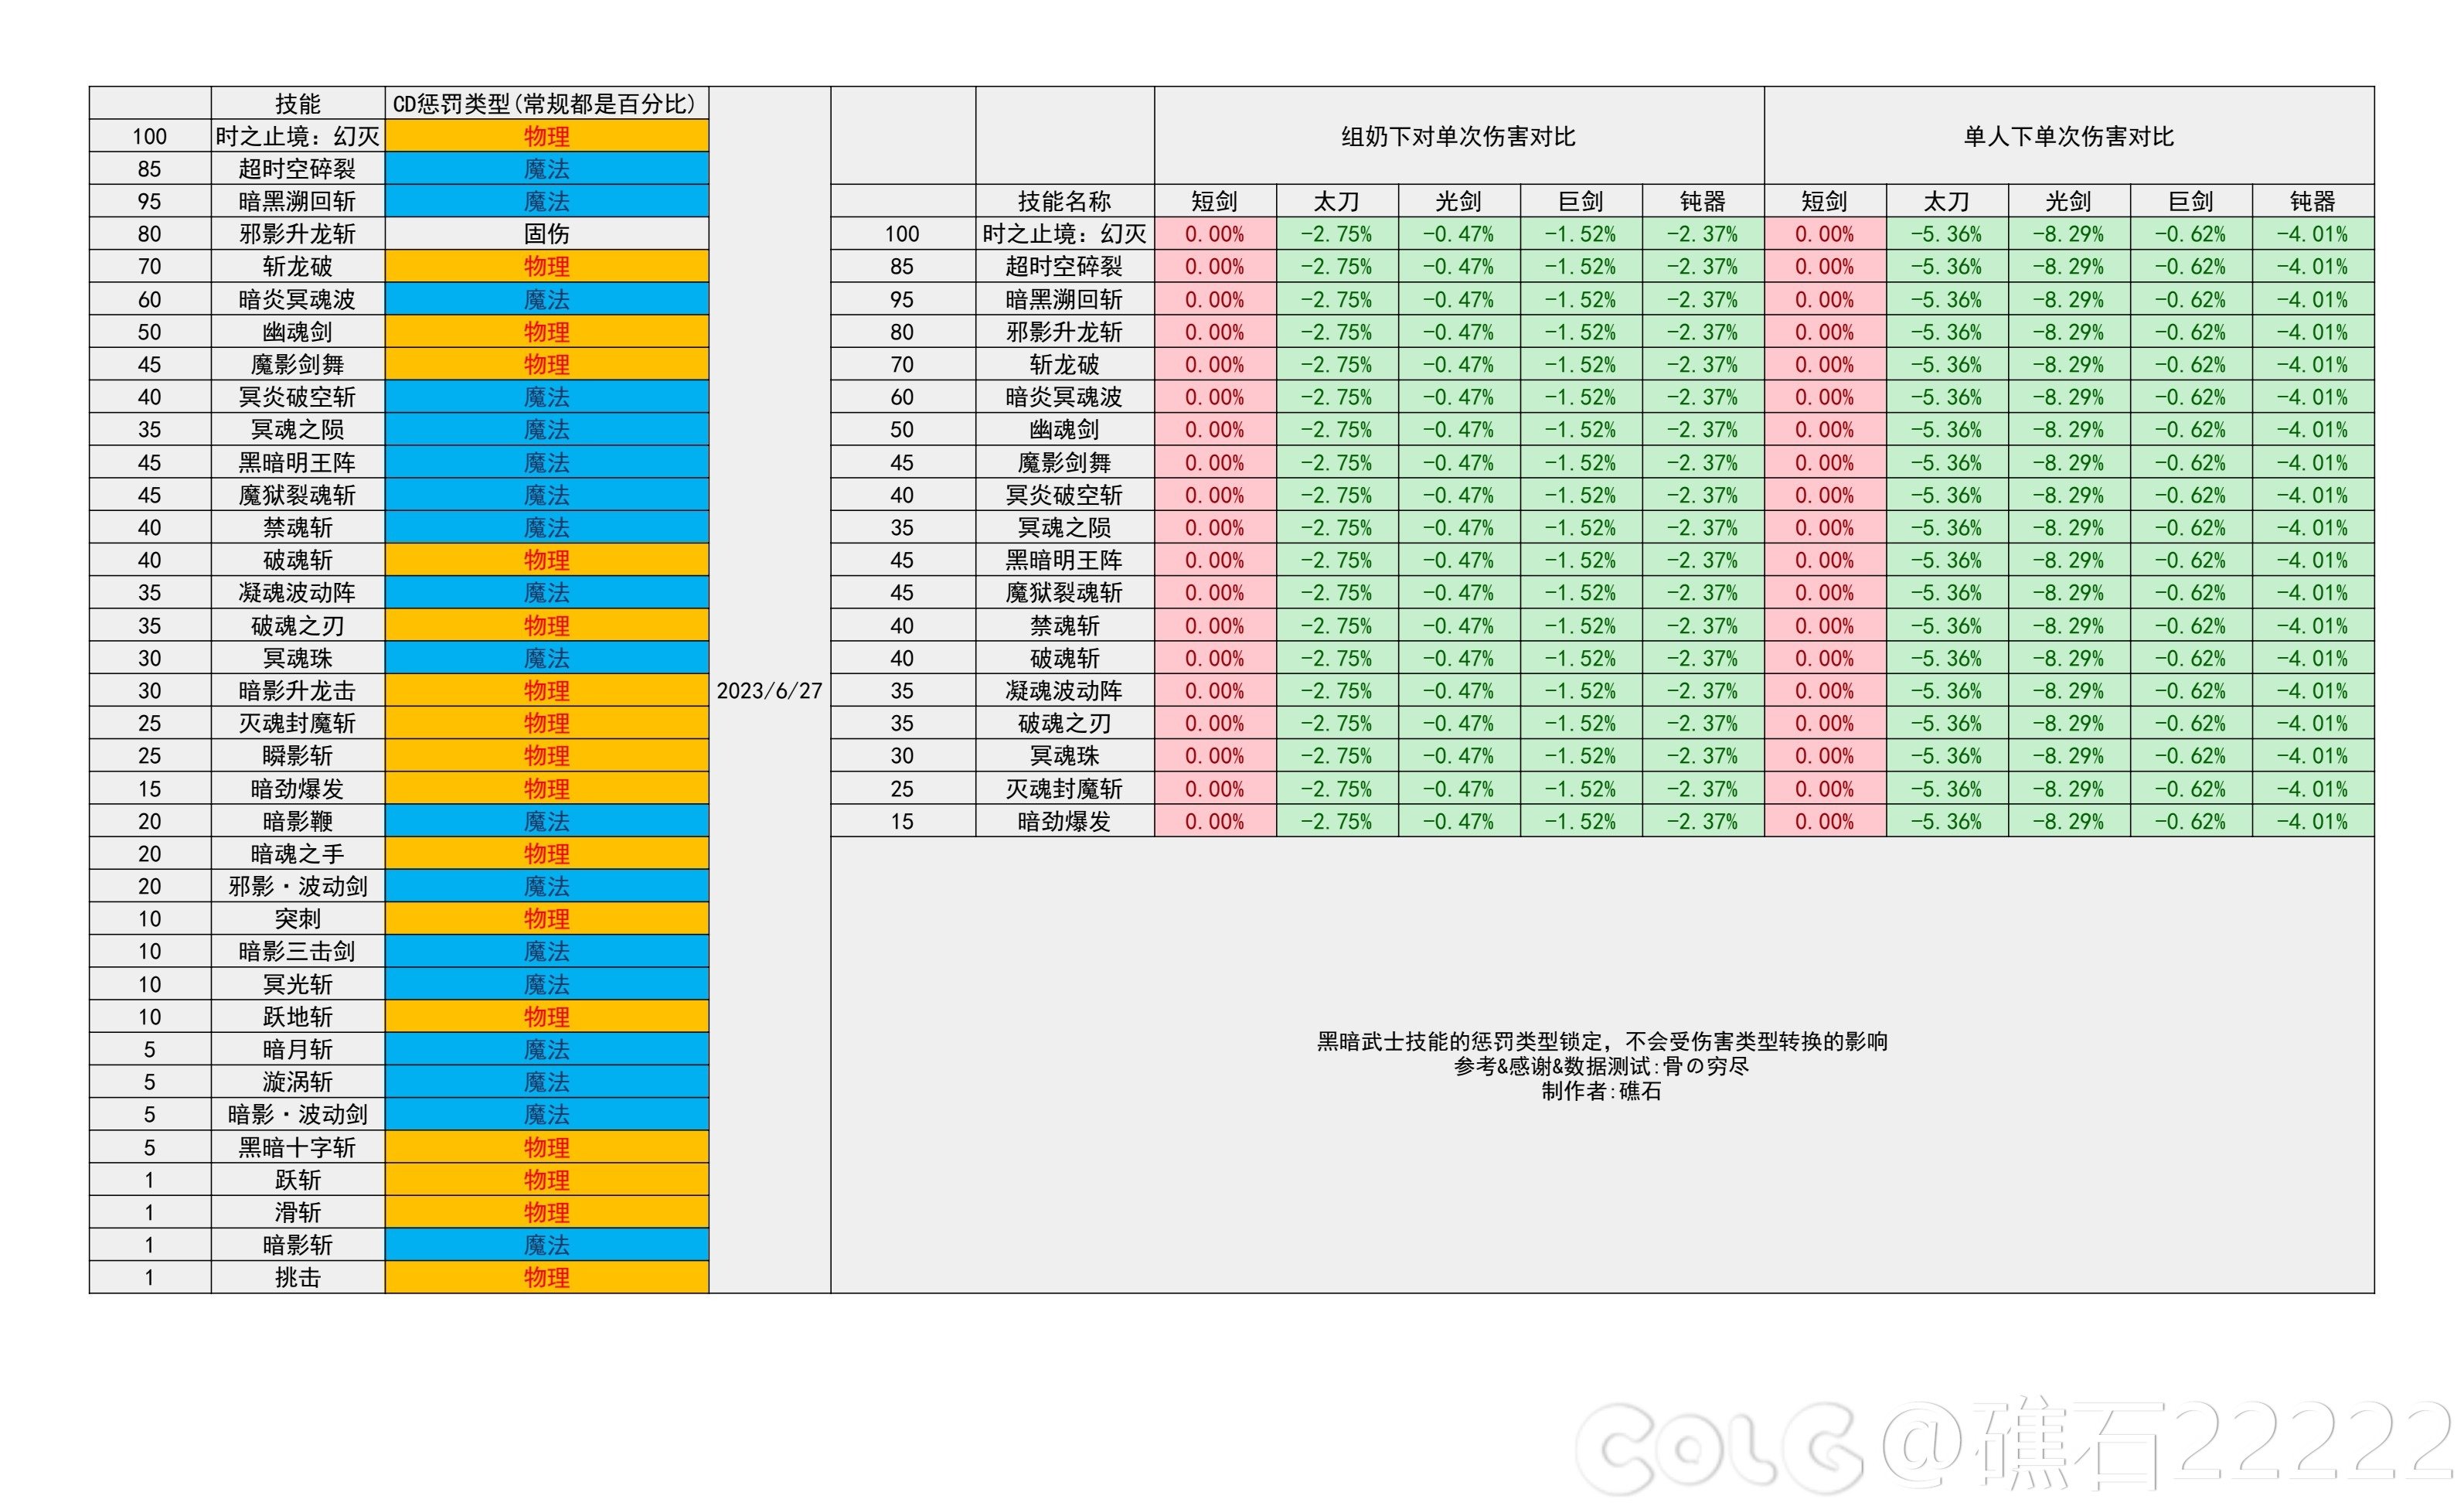 【国服现状】110版本输出职业数据表(国正5.15)(存档)82